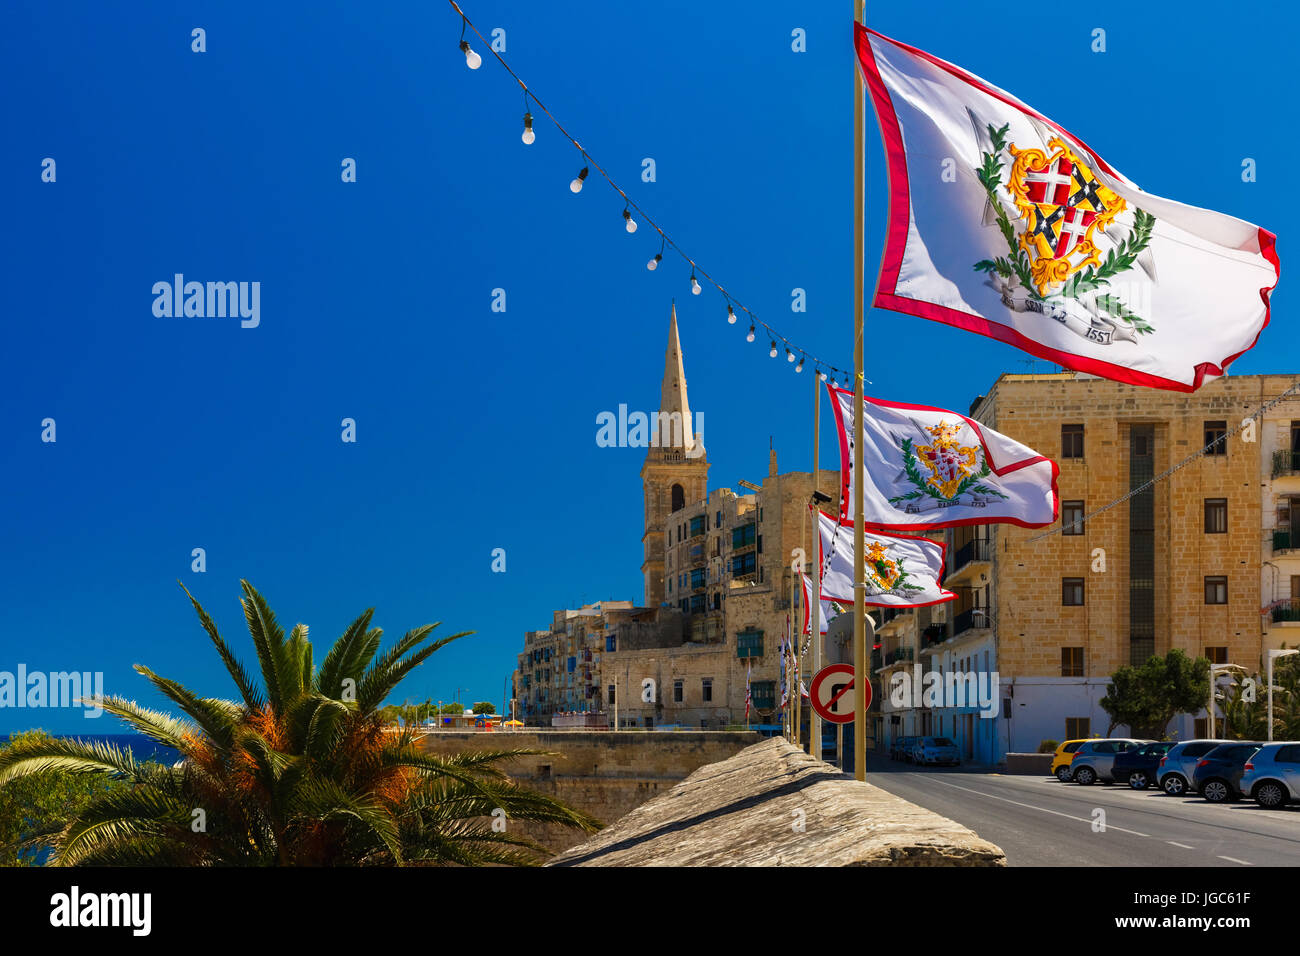 Addobbate a festa street con le bandiere di tutti i grandi maestri del Sovrano Militare Ordine di Malta nella città vecchia di La Valletta, Malta Foto Stock